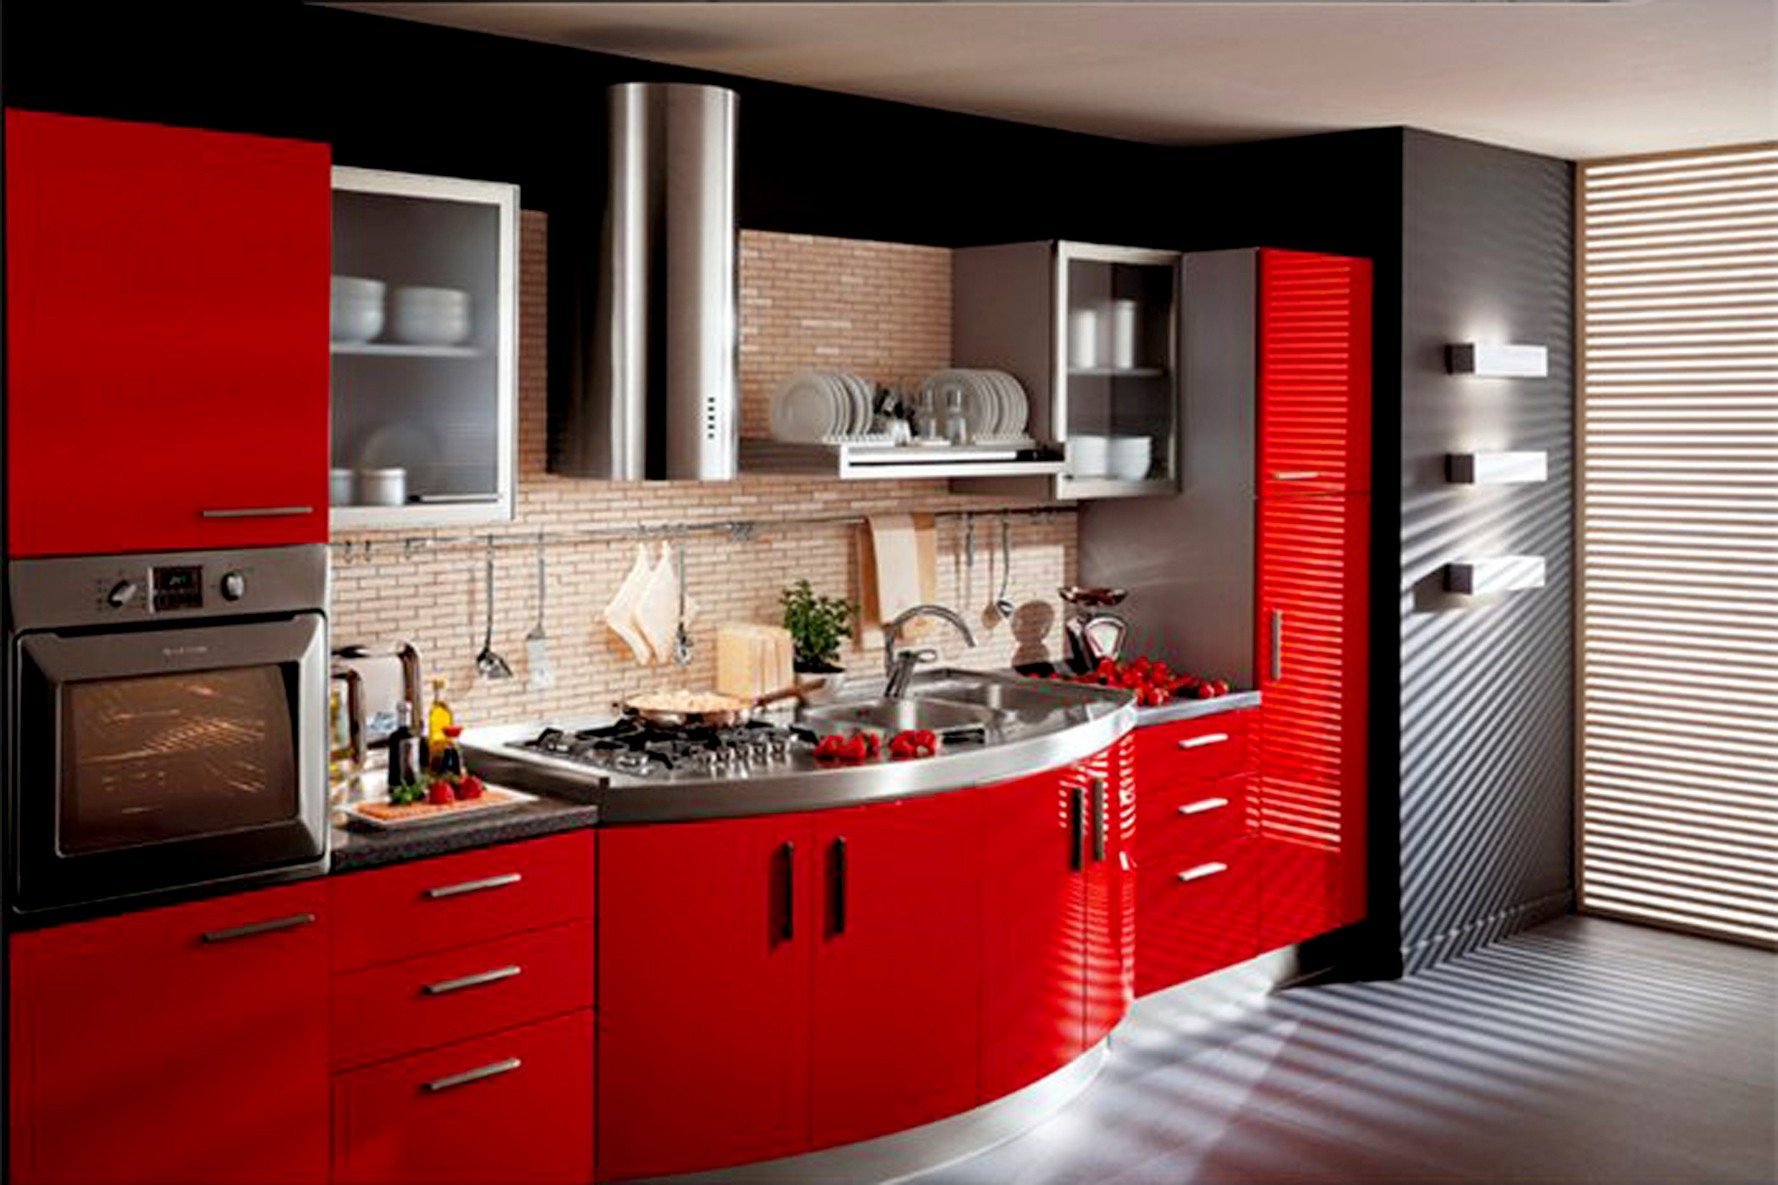 Купить кухню дизайн. Кухня в Красном цвете. Красивый кухонный гарнитур. Кухонный гарнитур красного цвета. Необычный кухонный гарнитур.